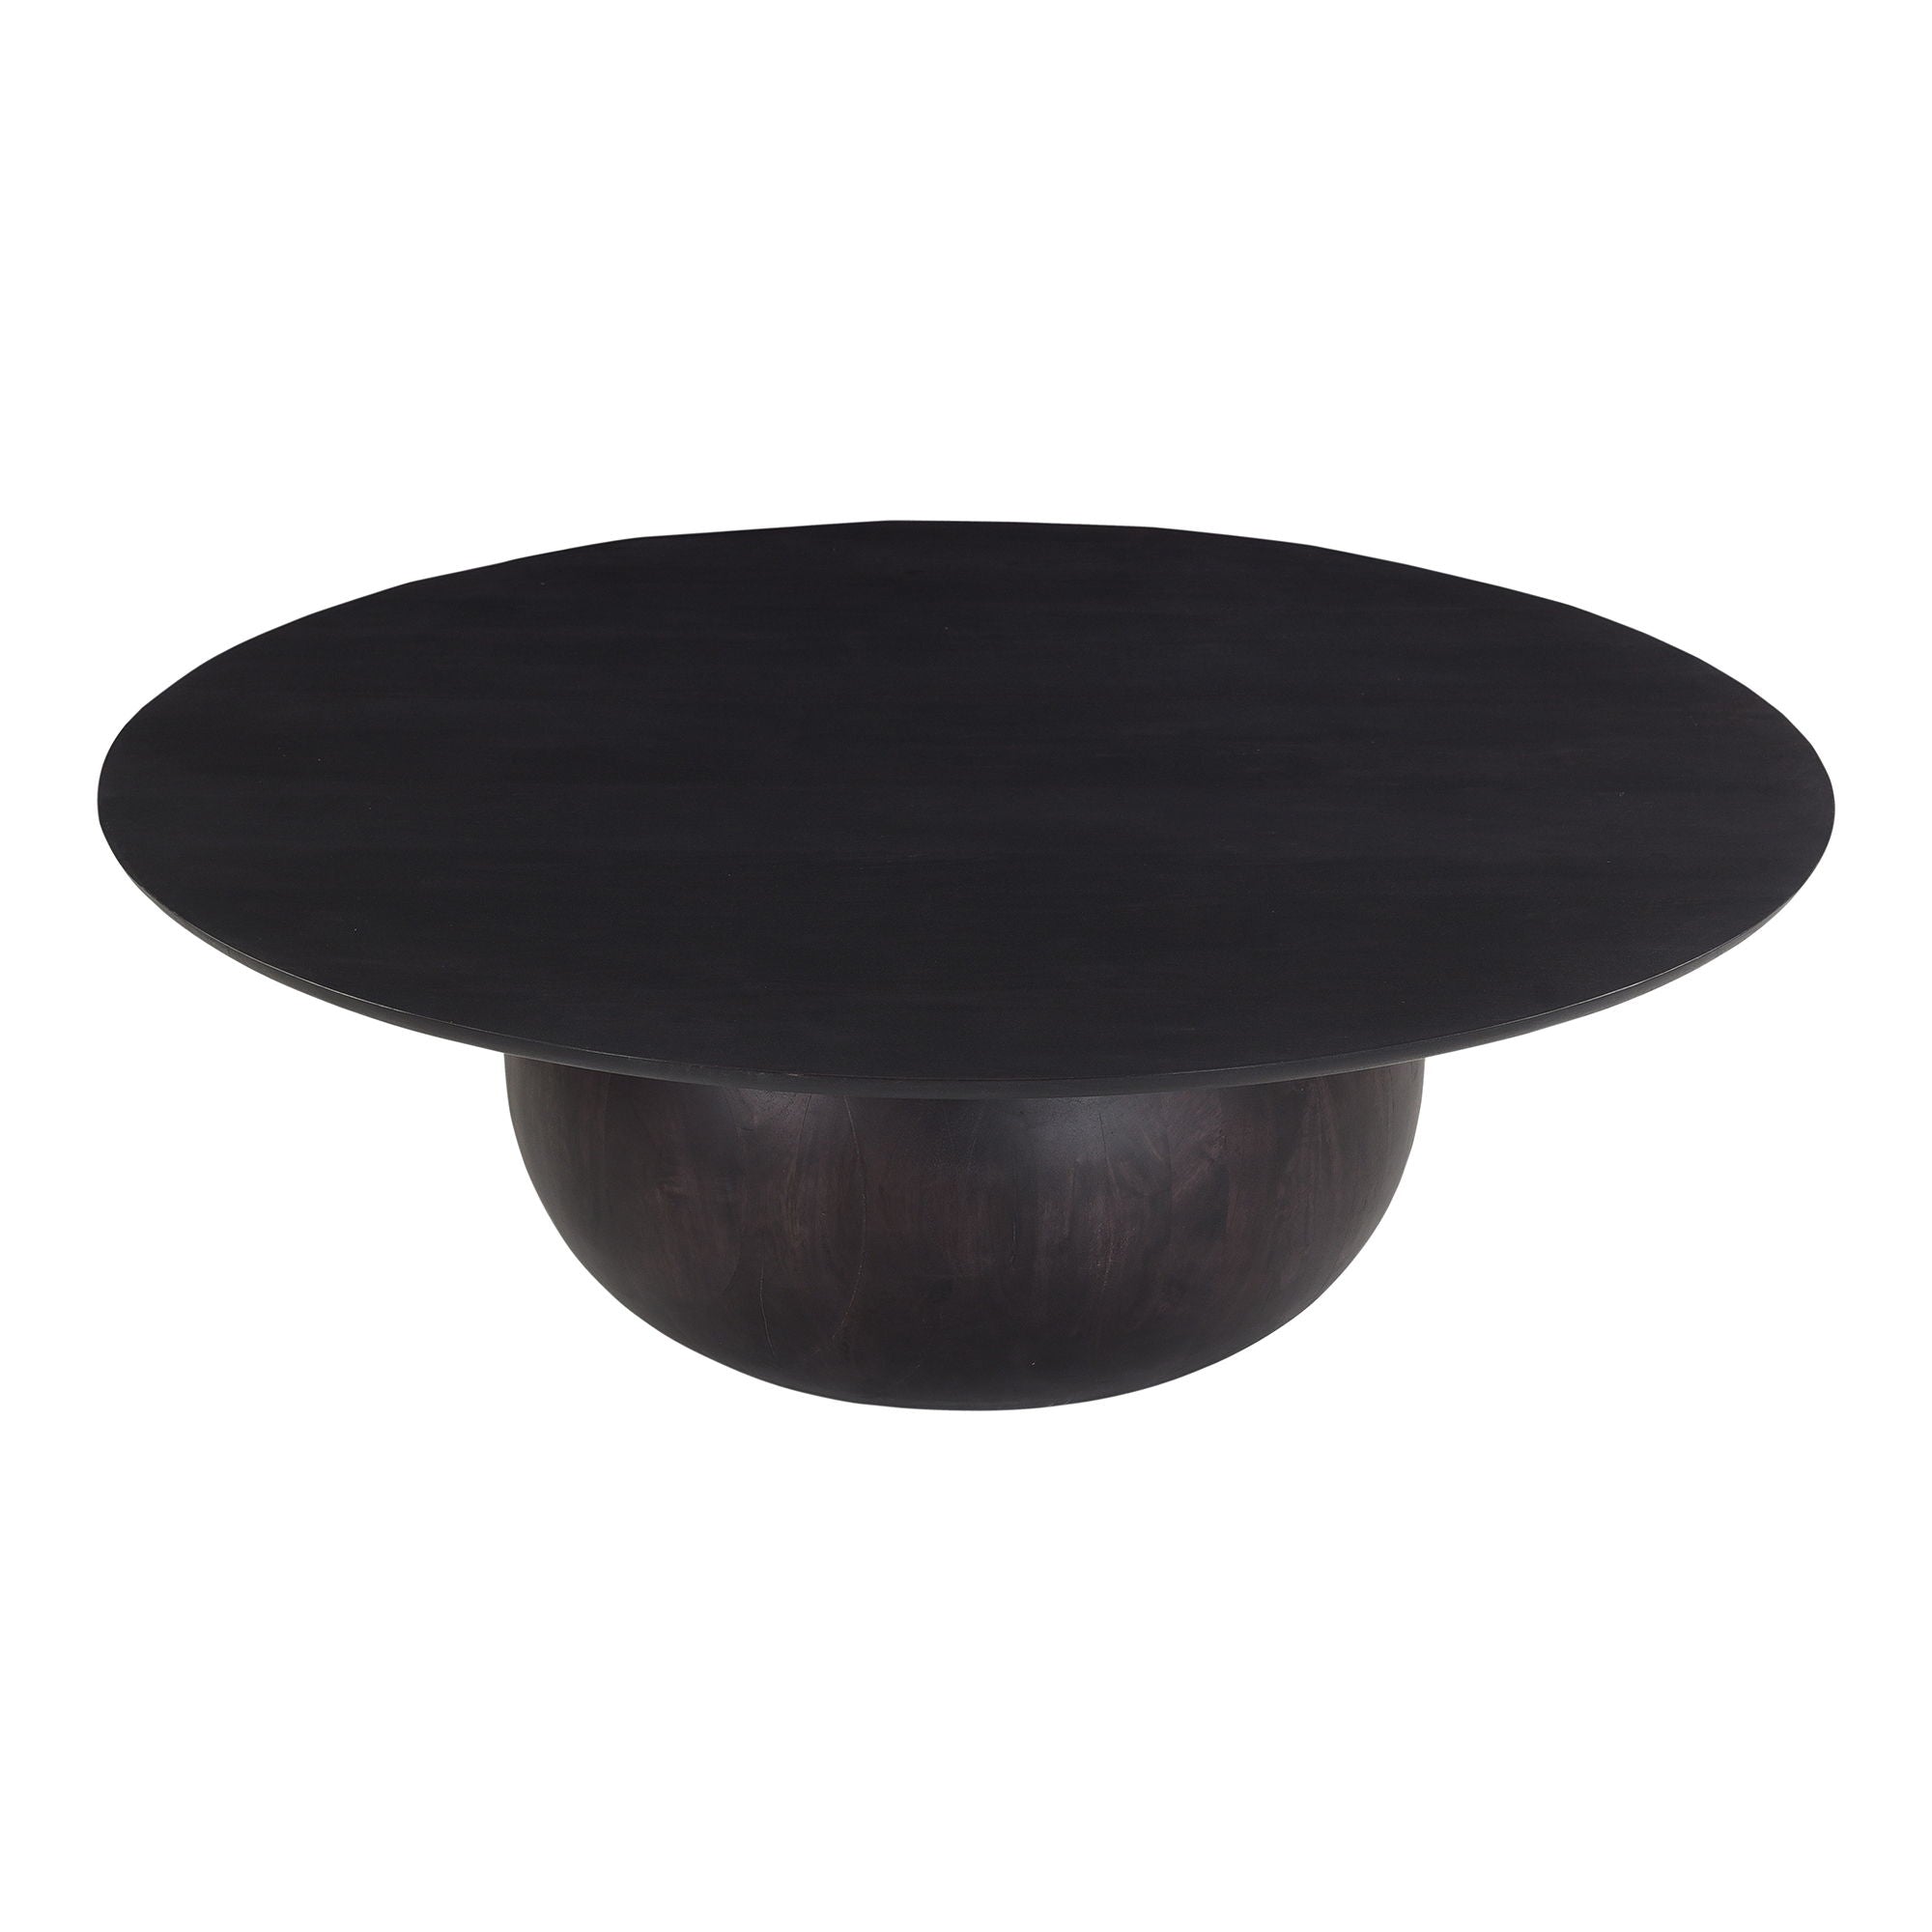 Bradbury - Coffee Table Large - Black - Wood